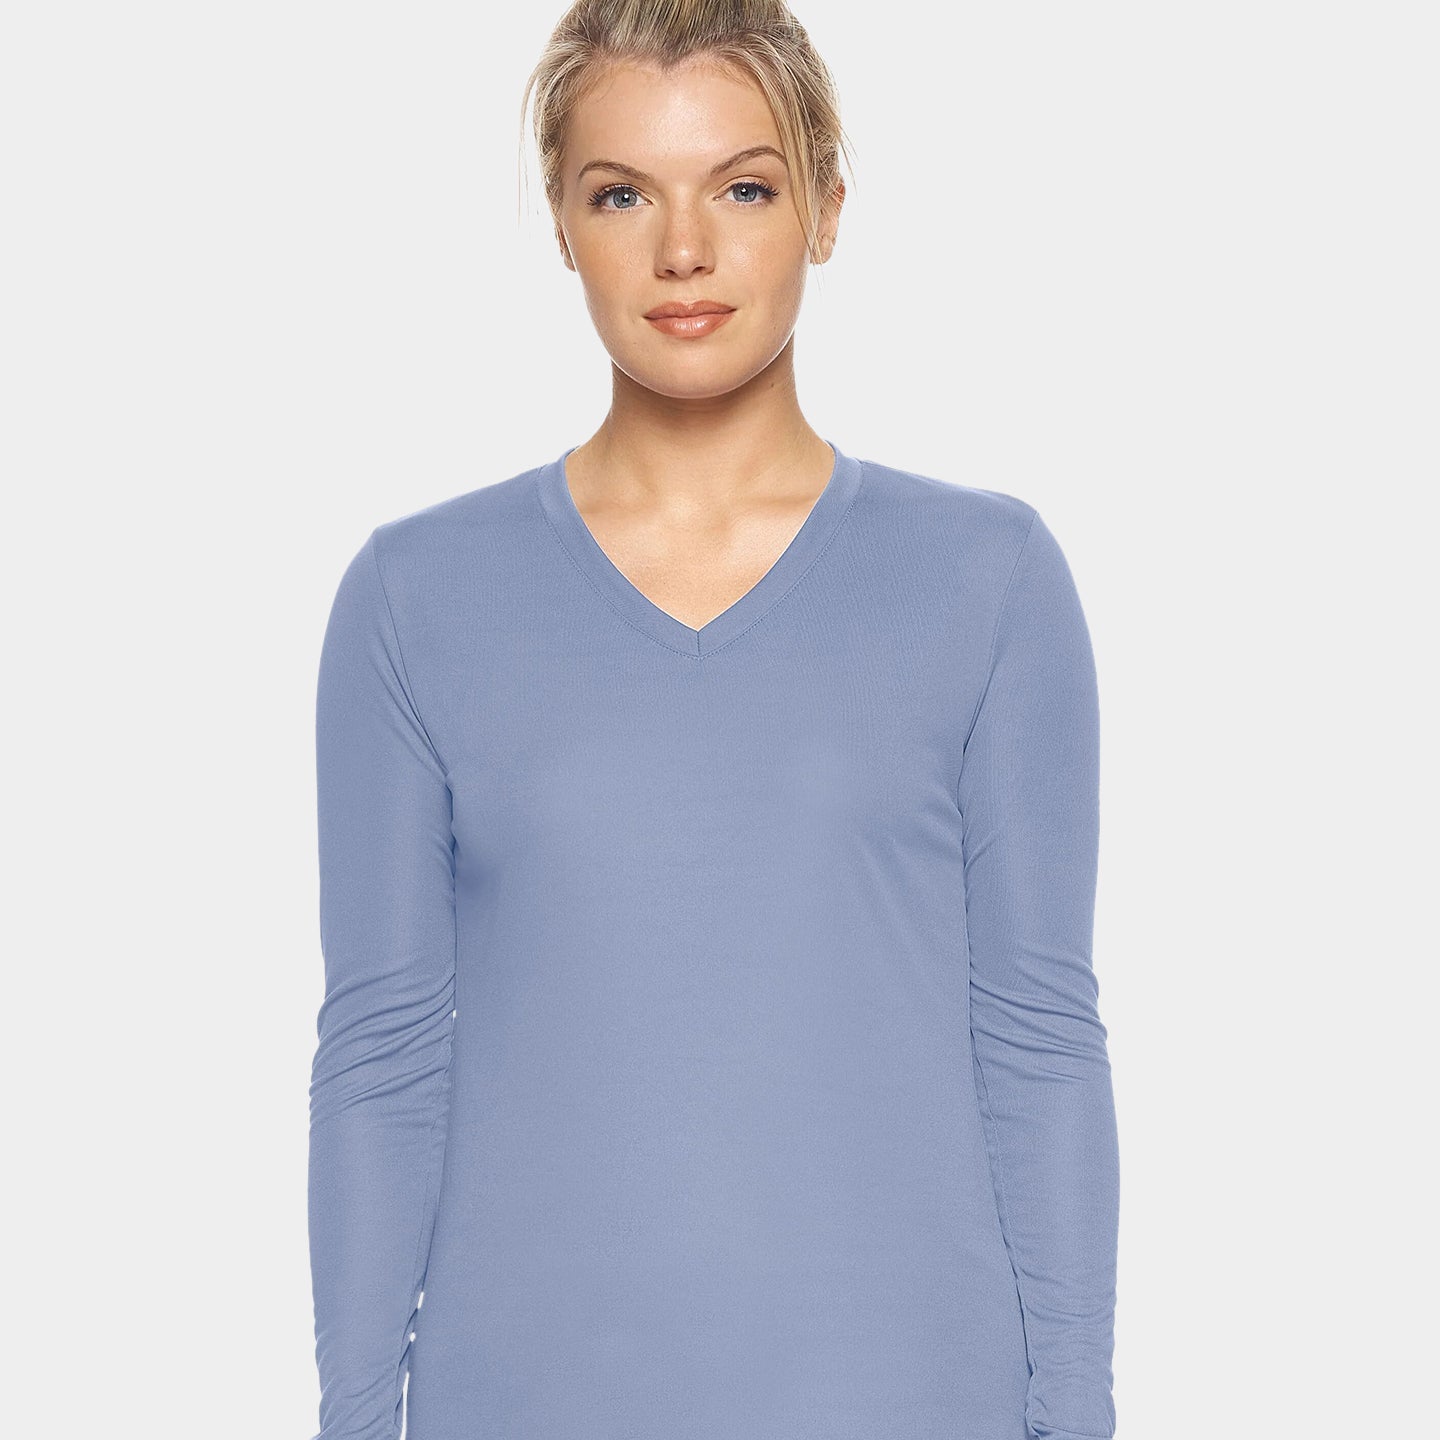 Expert Brand DriMax Women's Performance V-Neck Long Sleeve Shirt, XL, Steel A1